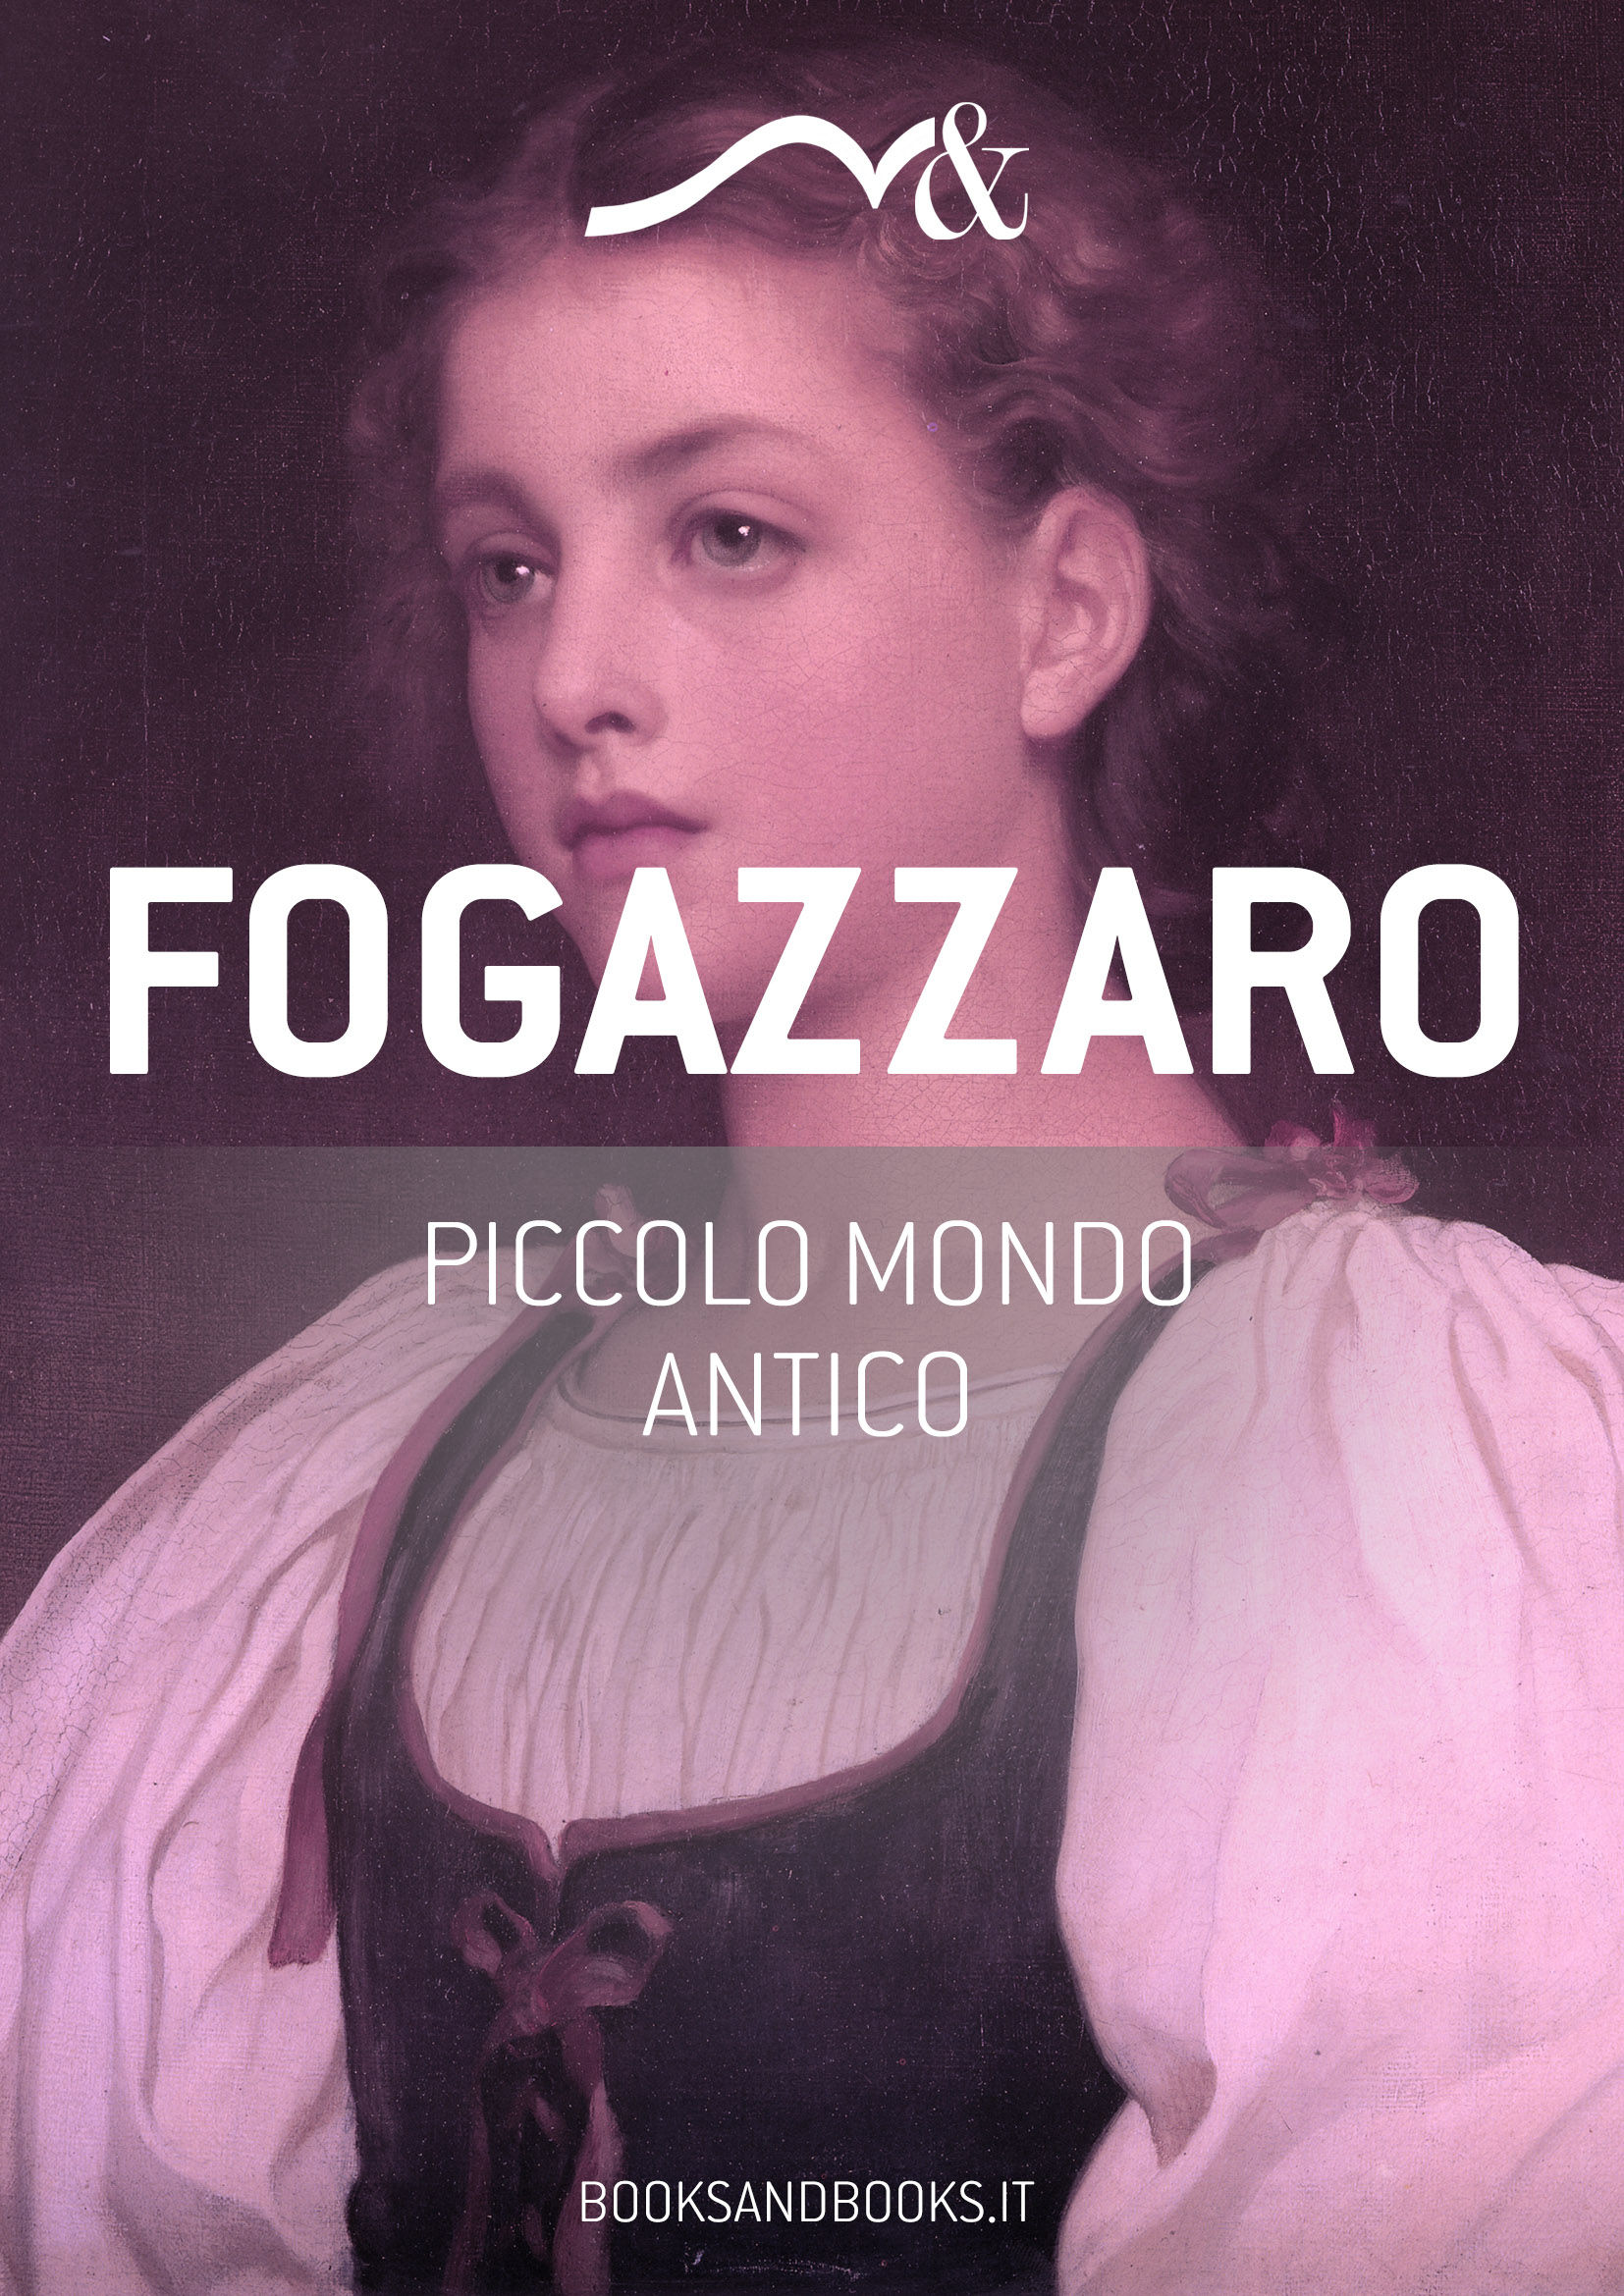 Copertina ebook - Piccolo mondo antico - Antonio Fogazzaro